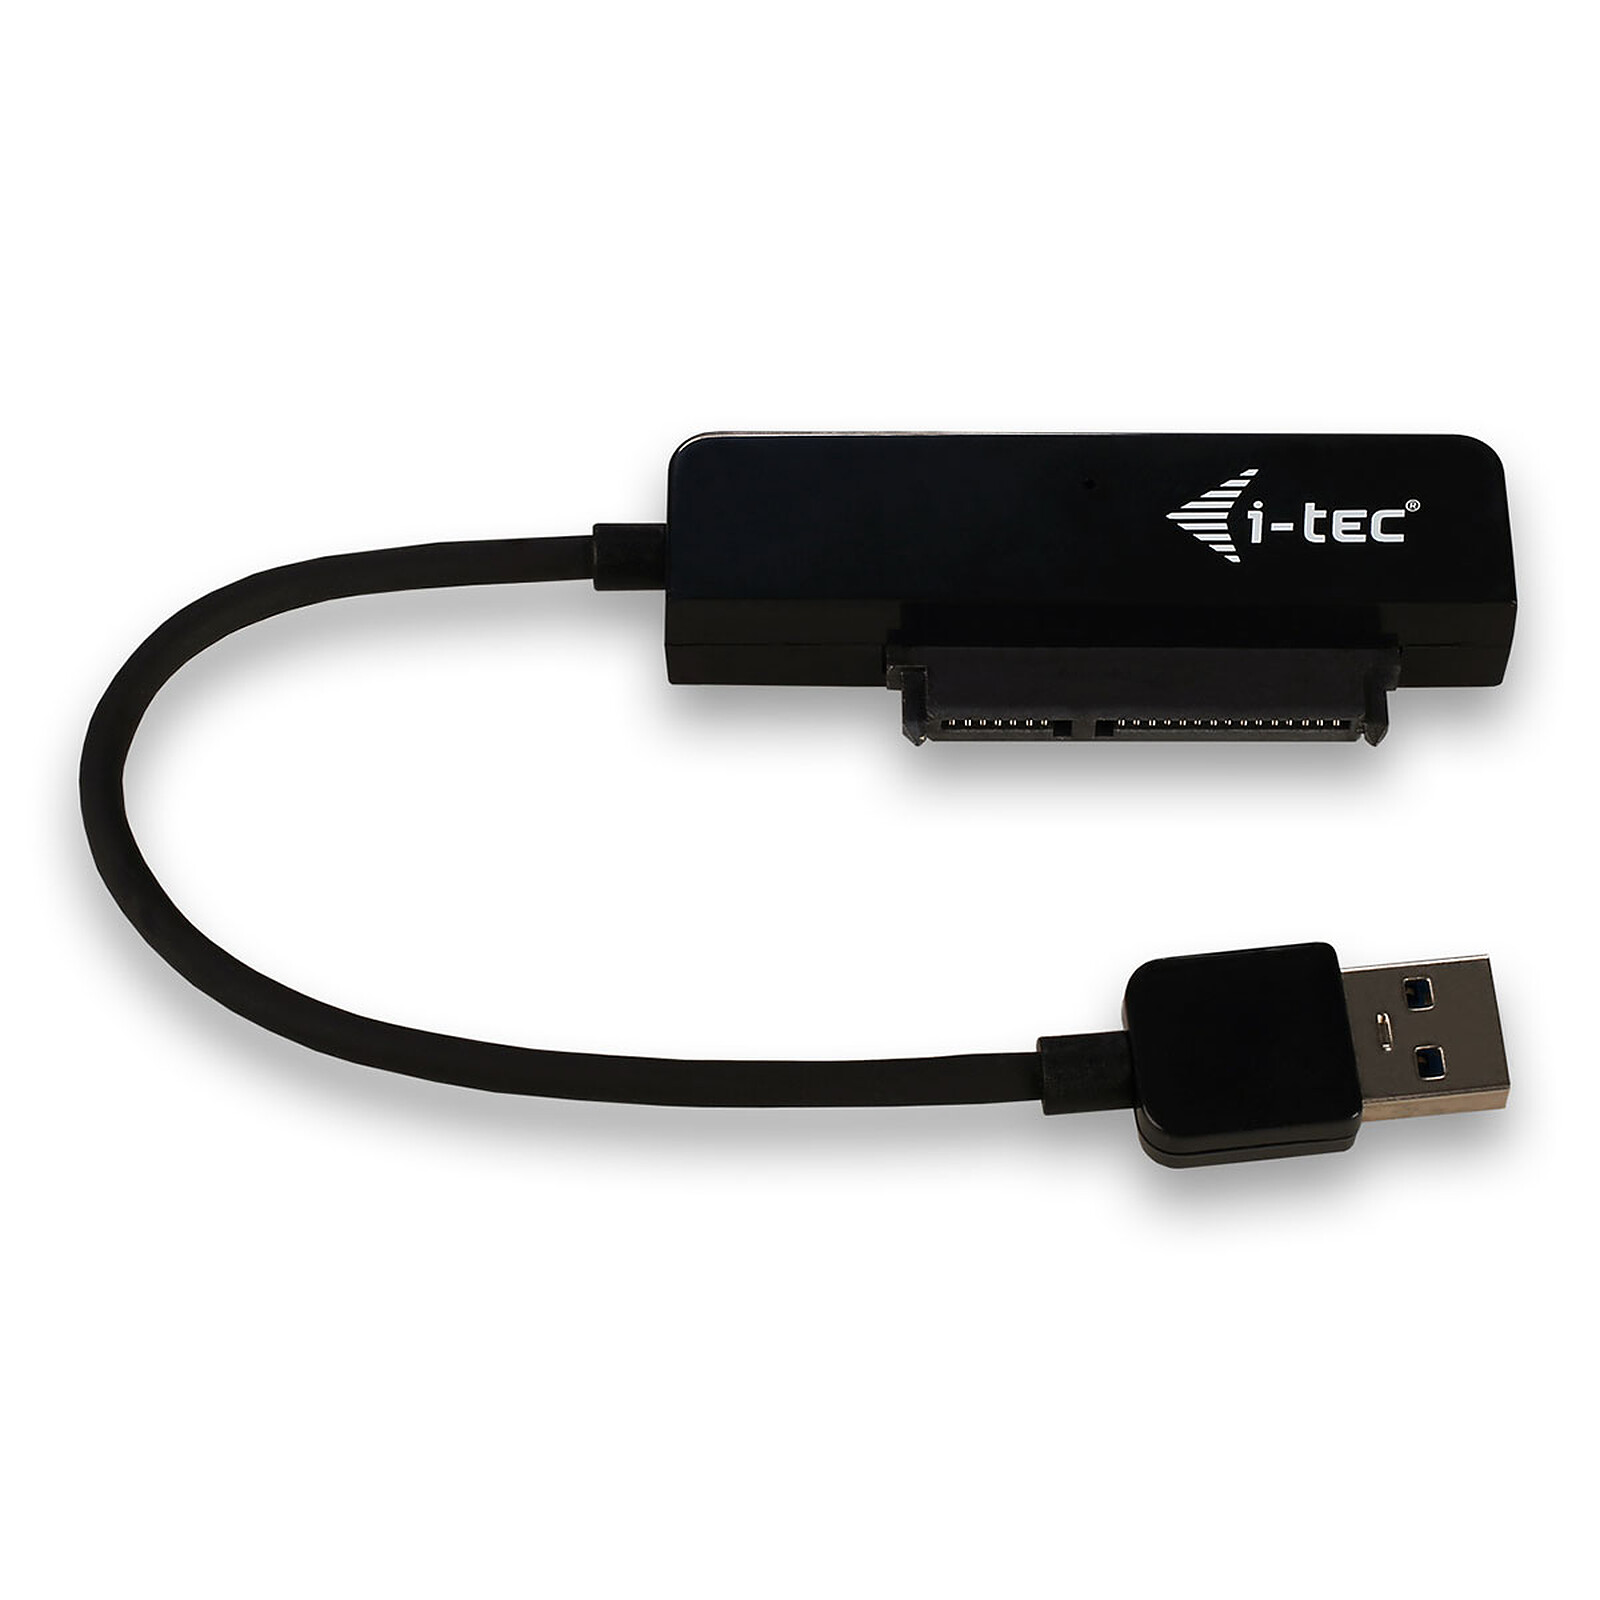 Heden boitier externe USB 3.0 en aluminium brossé pour disque dur 2.5''  SATA III (coloris rouge) - Boîtier disque dur - Garantie 3 ans LDLC